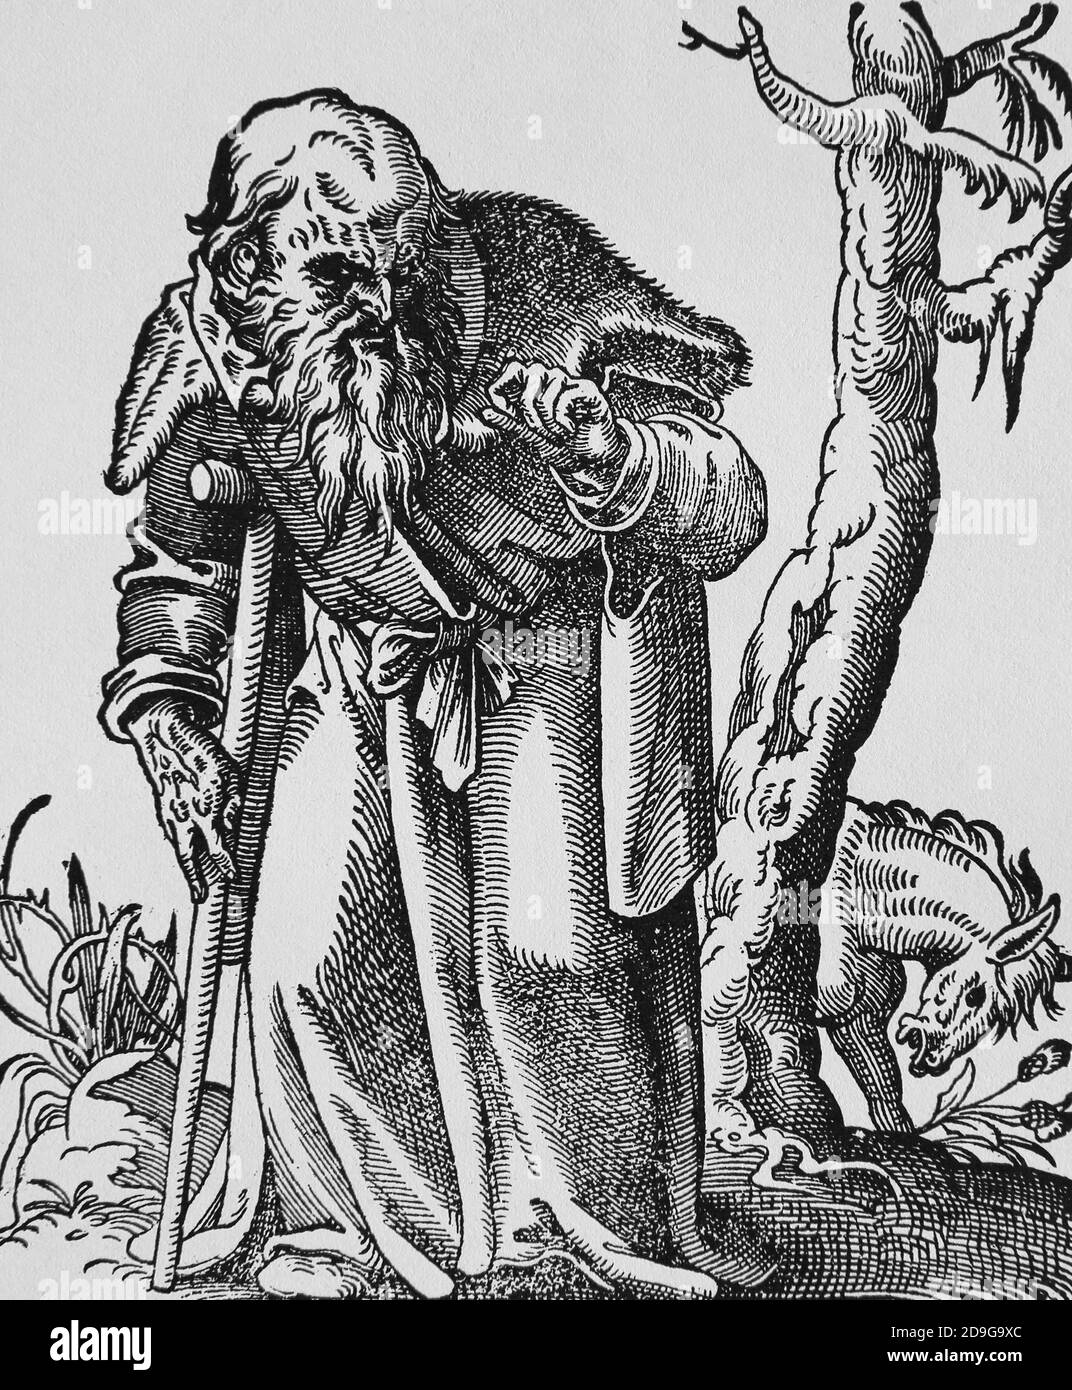 Renaissance-Ära. 16. Jahrhundert. Alter Mann mit Krücke. Stich von Jost Amman, 1599. Stockfoto